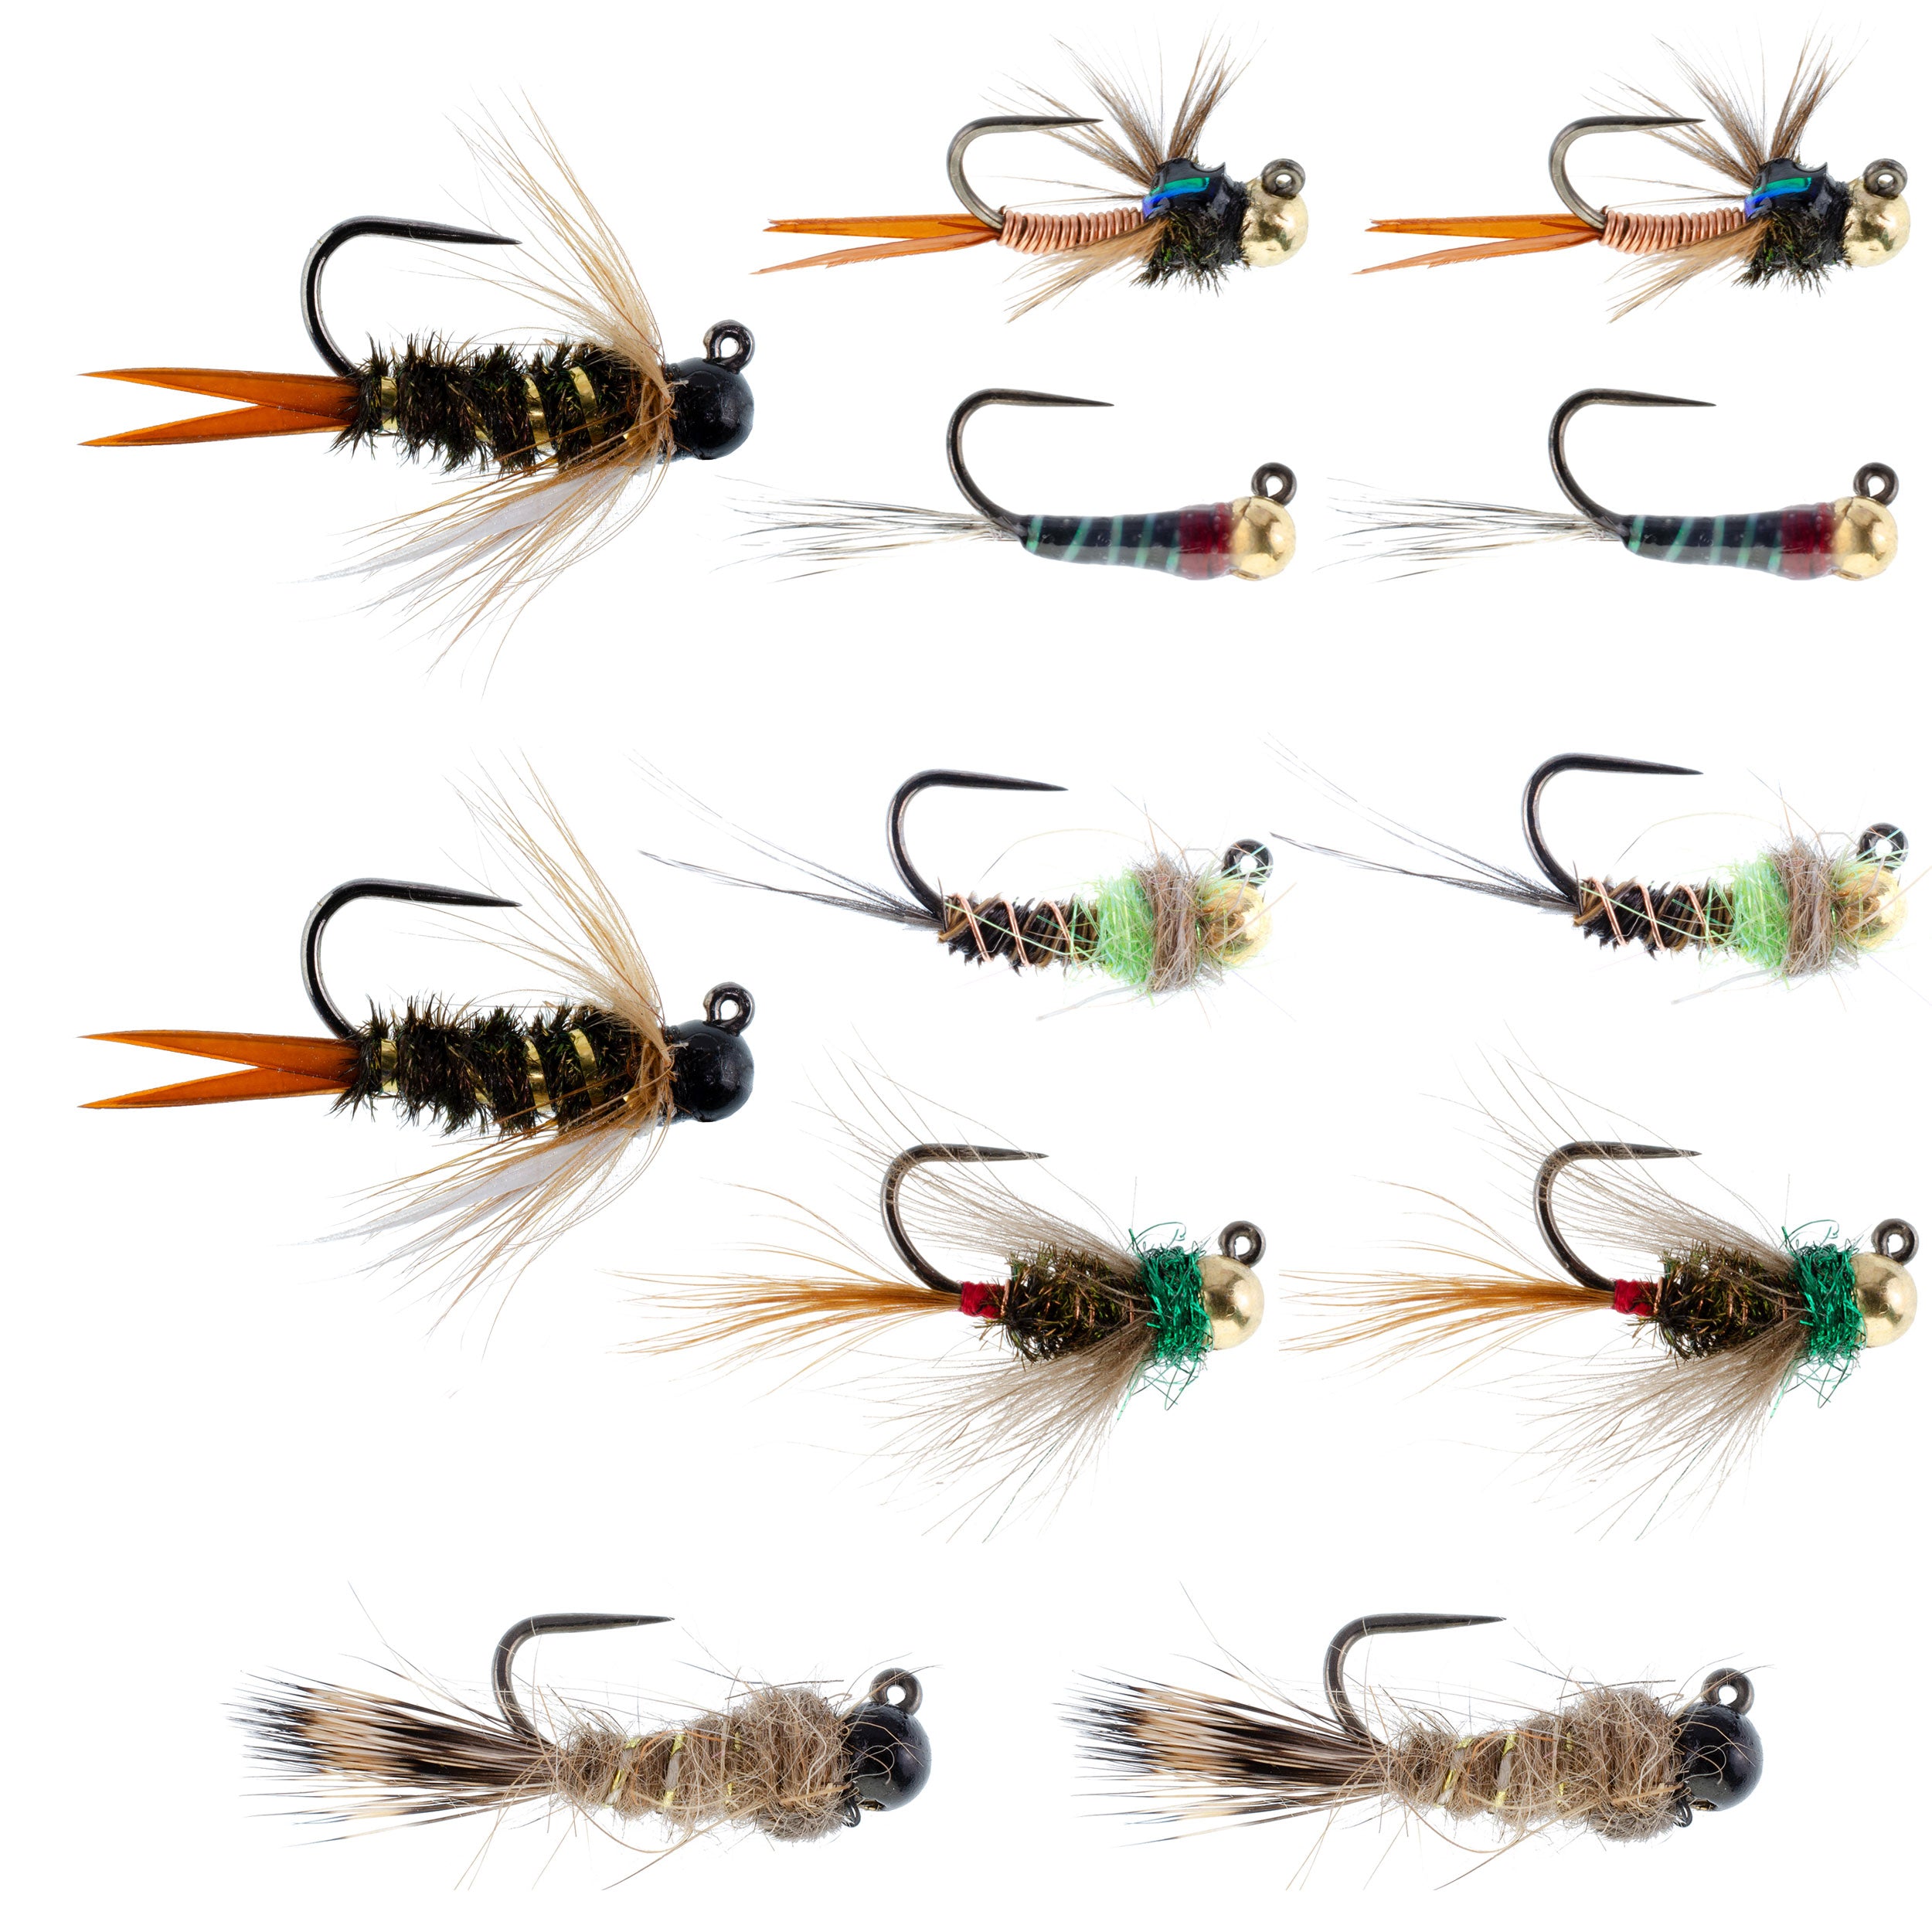 Colección táctica de moscas para pesca con mosca de ninfa checa, una docena de cuentas de tungsteno, surtido de moscas para ninfa europea, 2 de cada uno de 6 patrones, tamaños de anzuelo 12, 14 y 16 